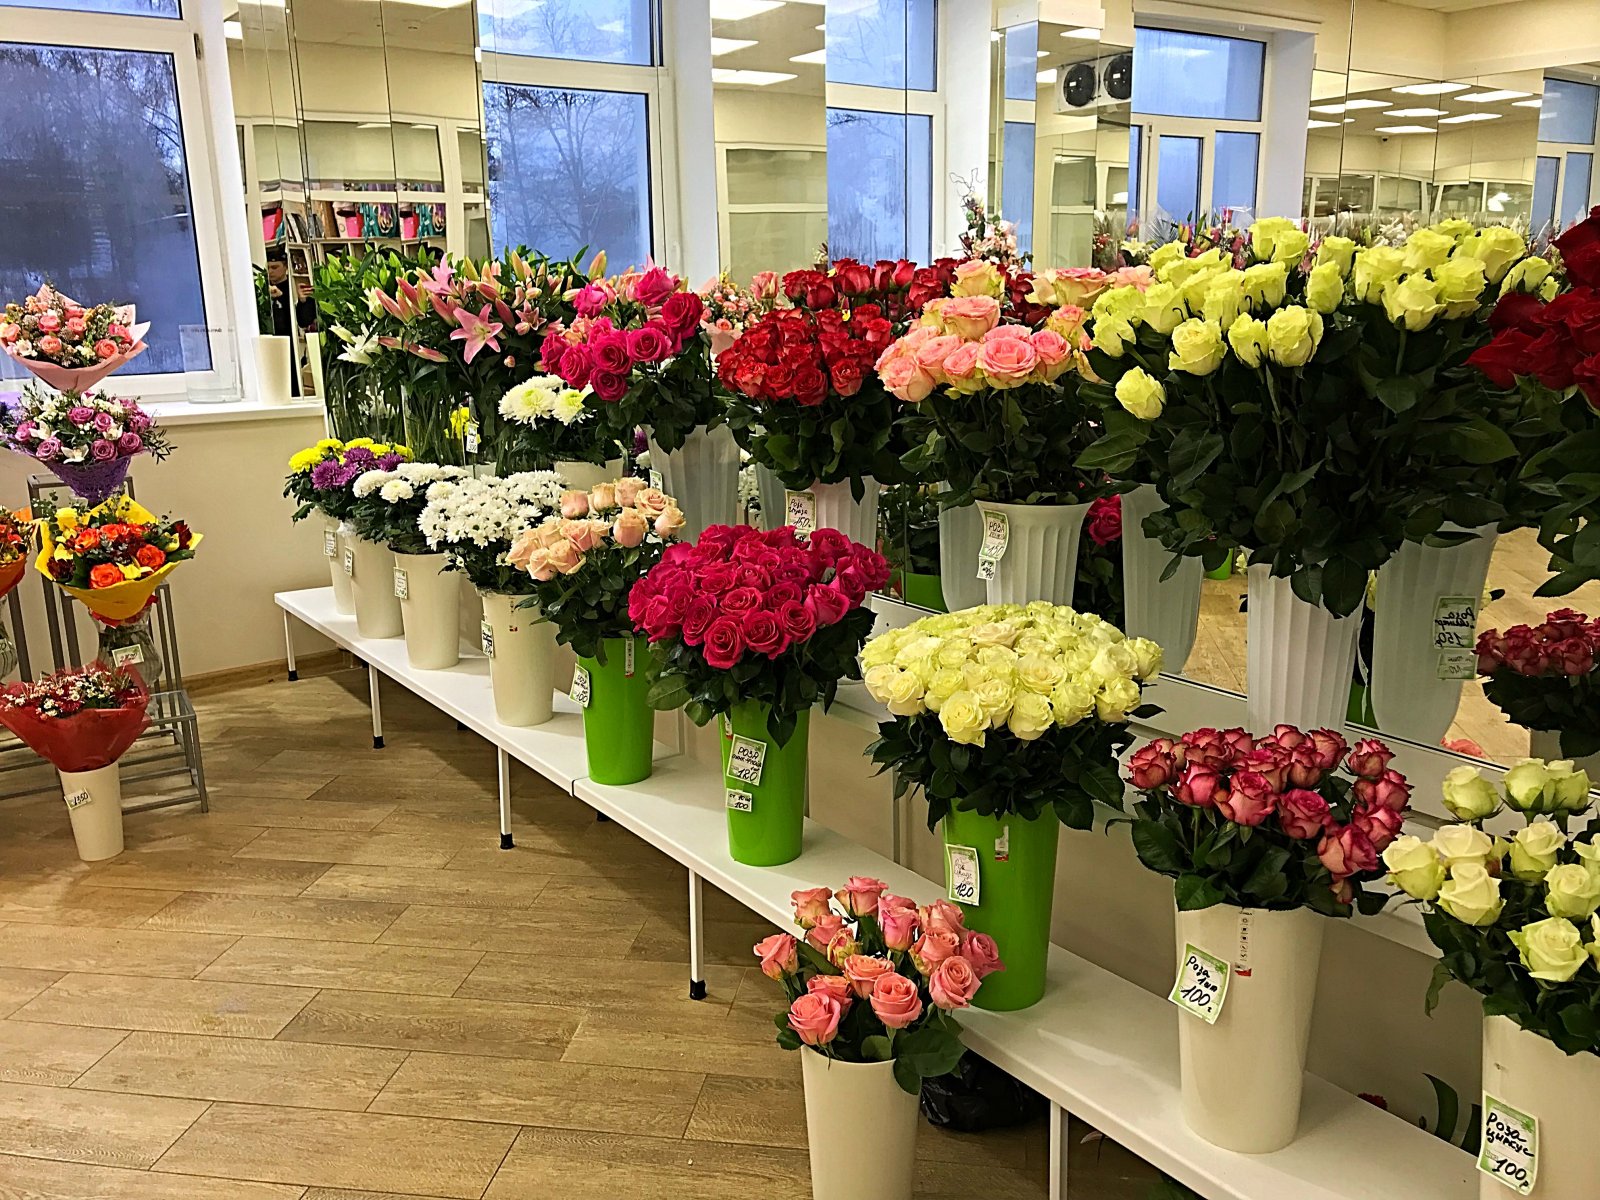 Купить розы в магазине недорого